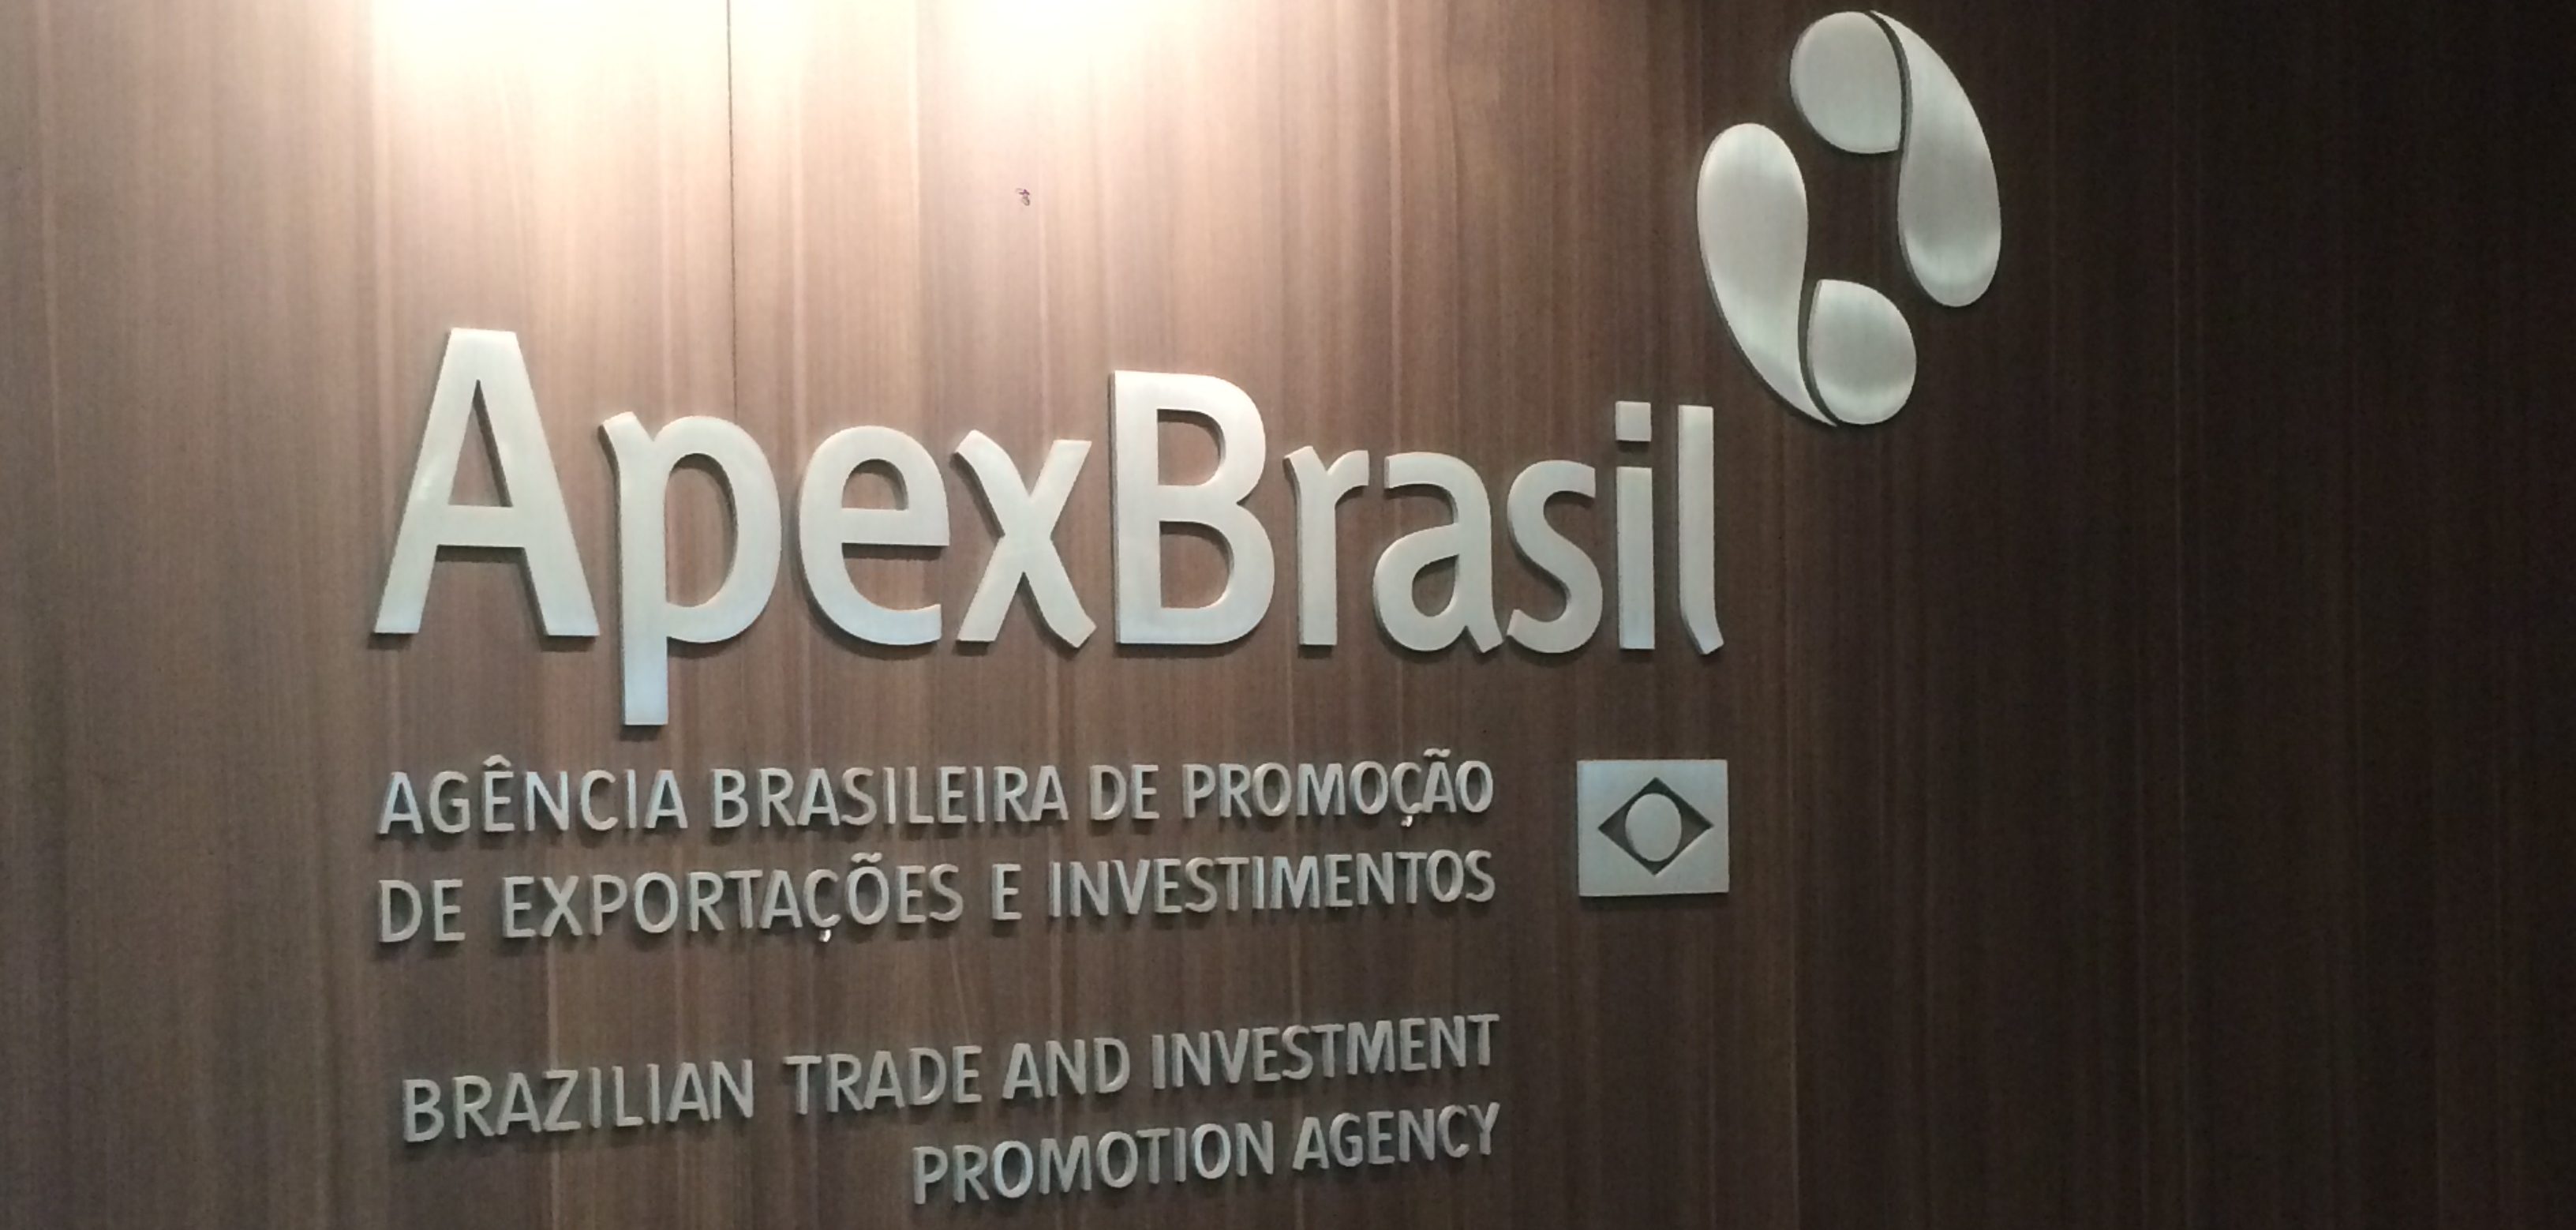 Apex-Brasil: Echosis visita a agência durante viagem por Miami USA